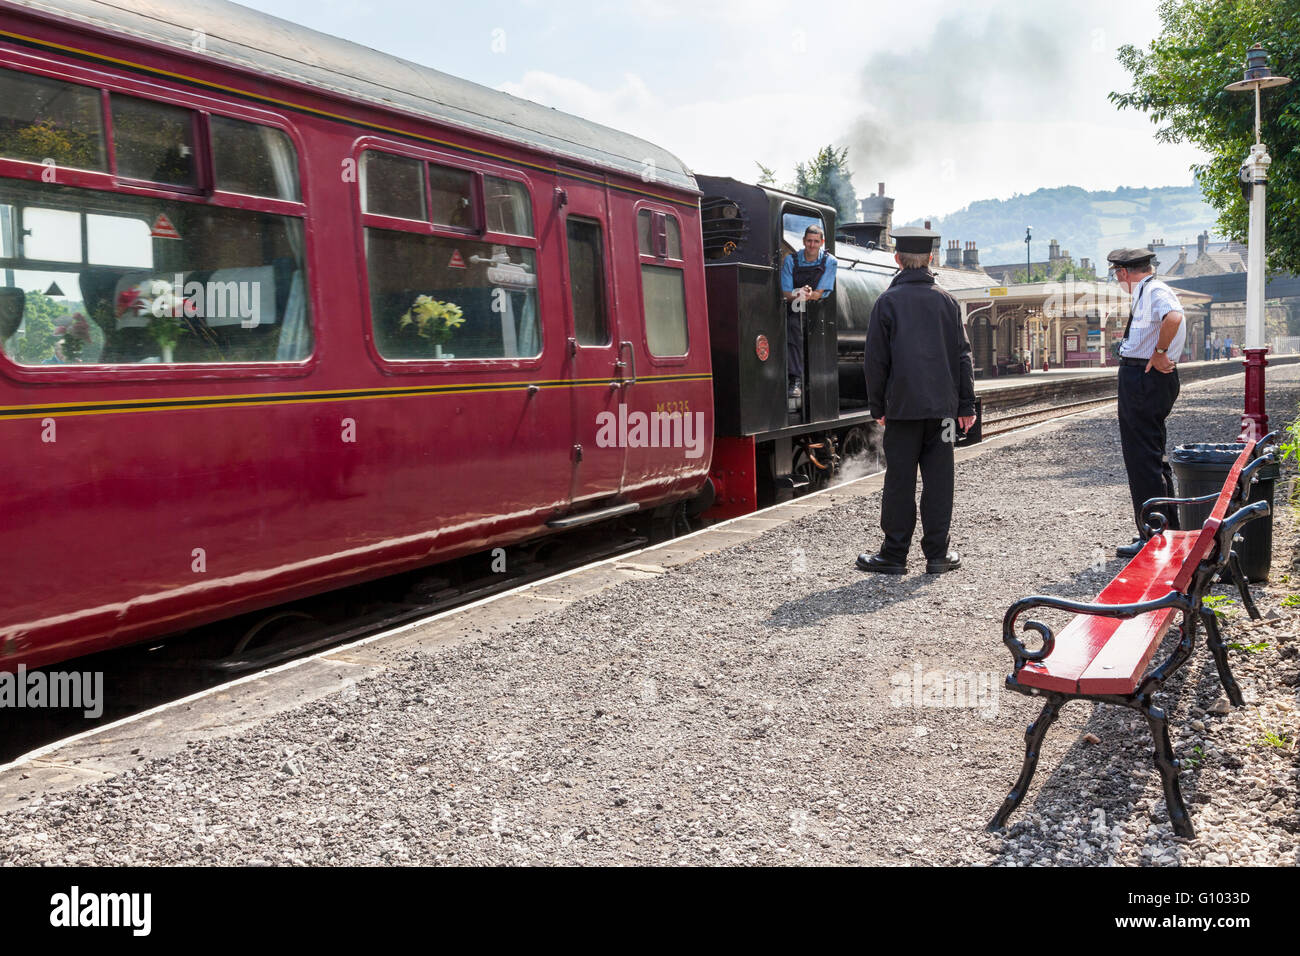 Ehrenamtliche Mitarbeiter für Peak Schiene, eine Museumsbahn, zusehen, wie ein Dampfzug ist Abfahrt am Bahnhof Matlock, Derbyshire, Großbritannien Stockfoto